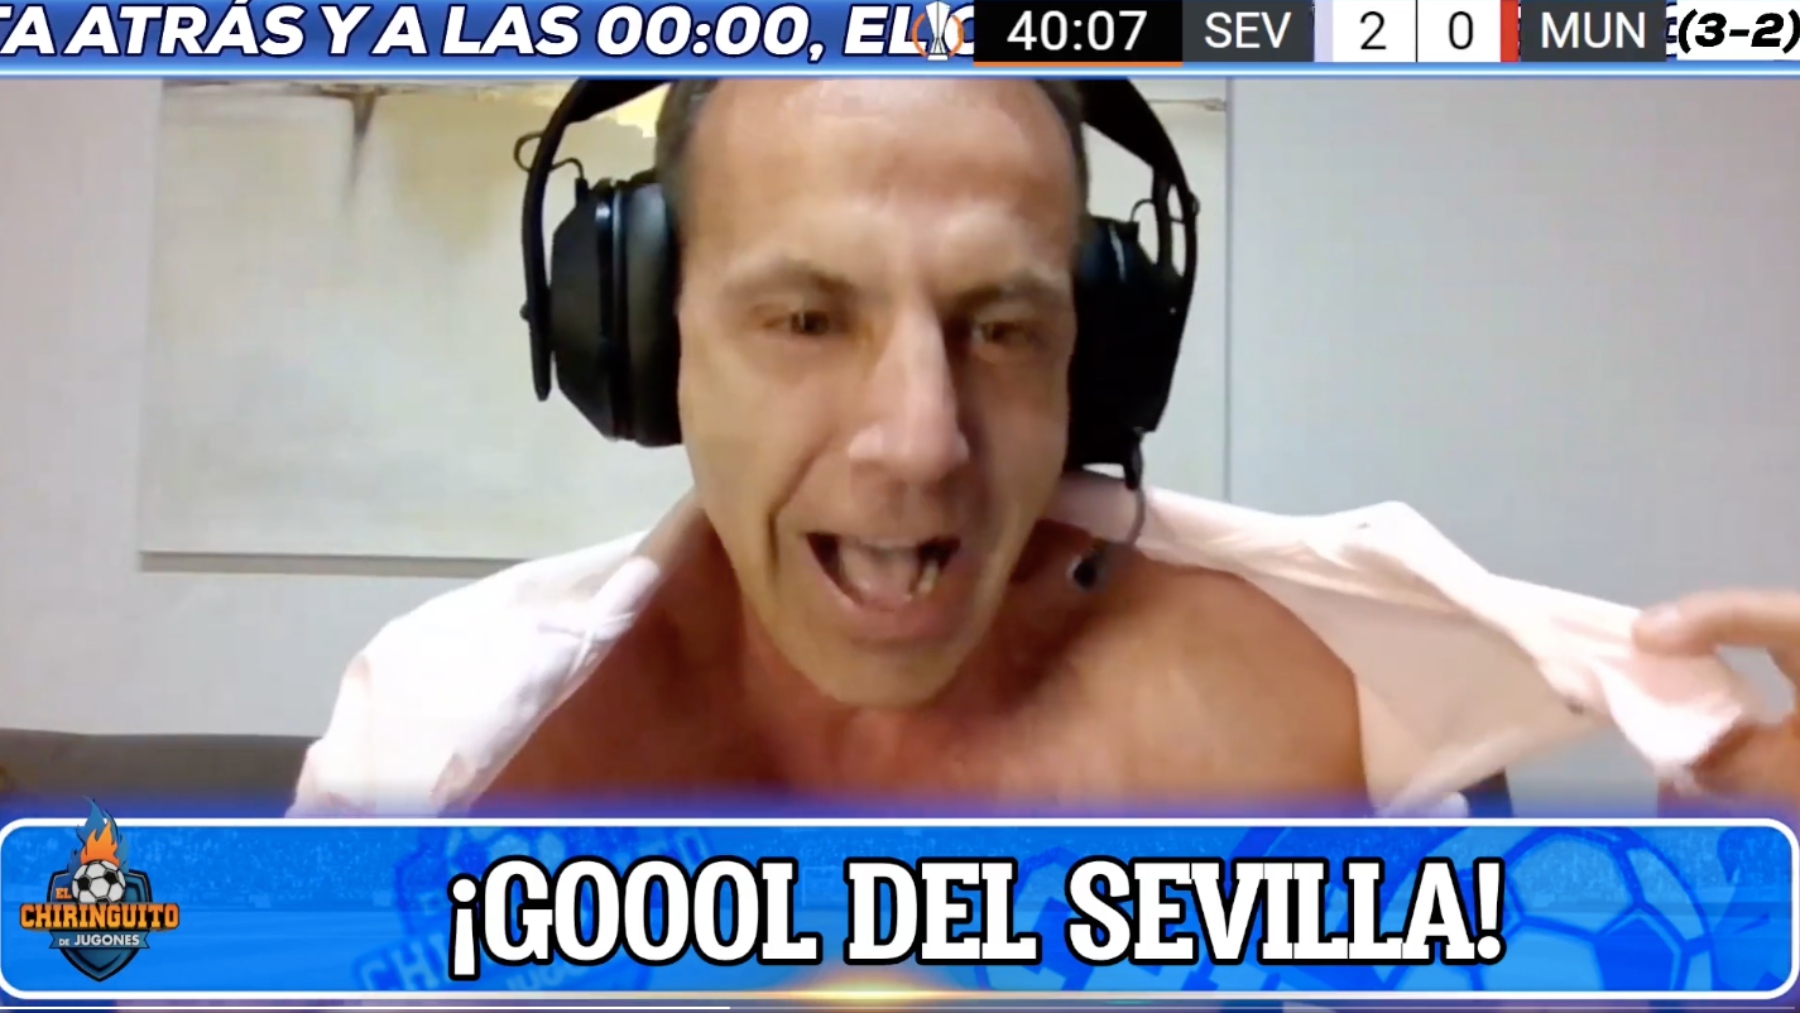 Cristobal Soria, celebrando el gol del Sevilla. (El Chiringuito)